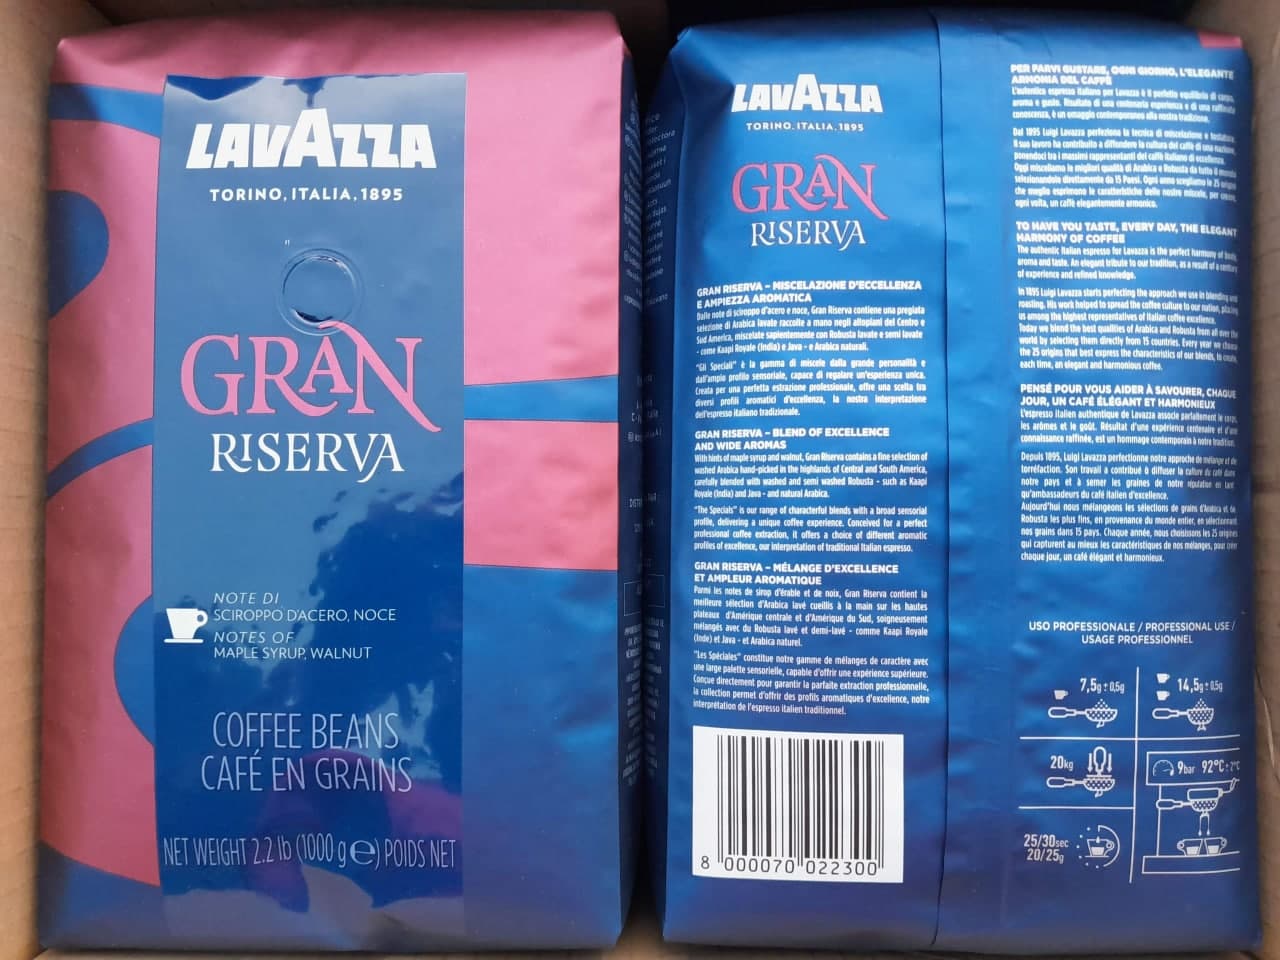 Kohvioad "LAVAZZA" Specials Collection Gran Riserva